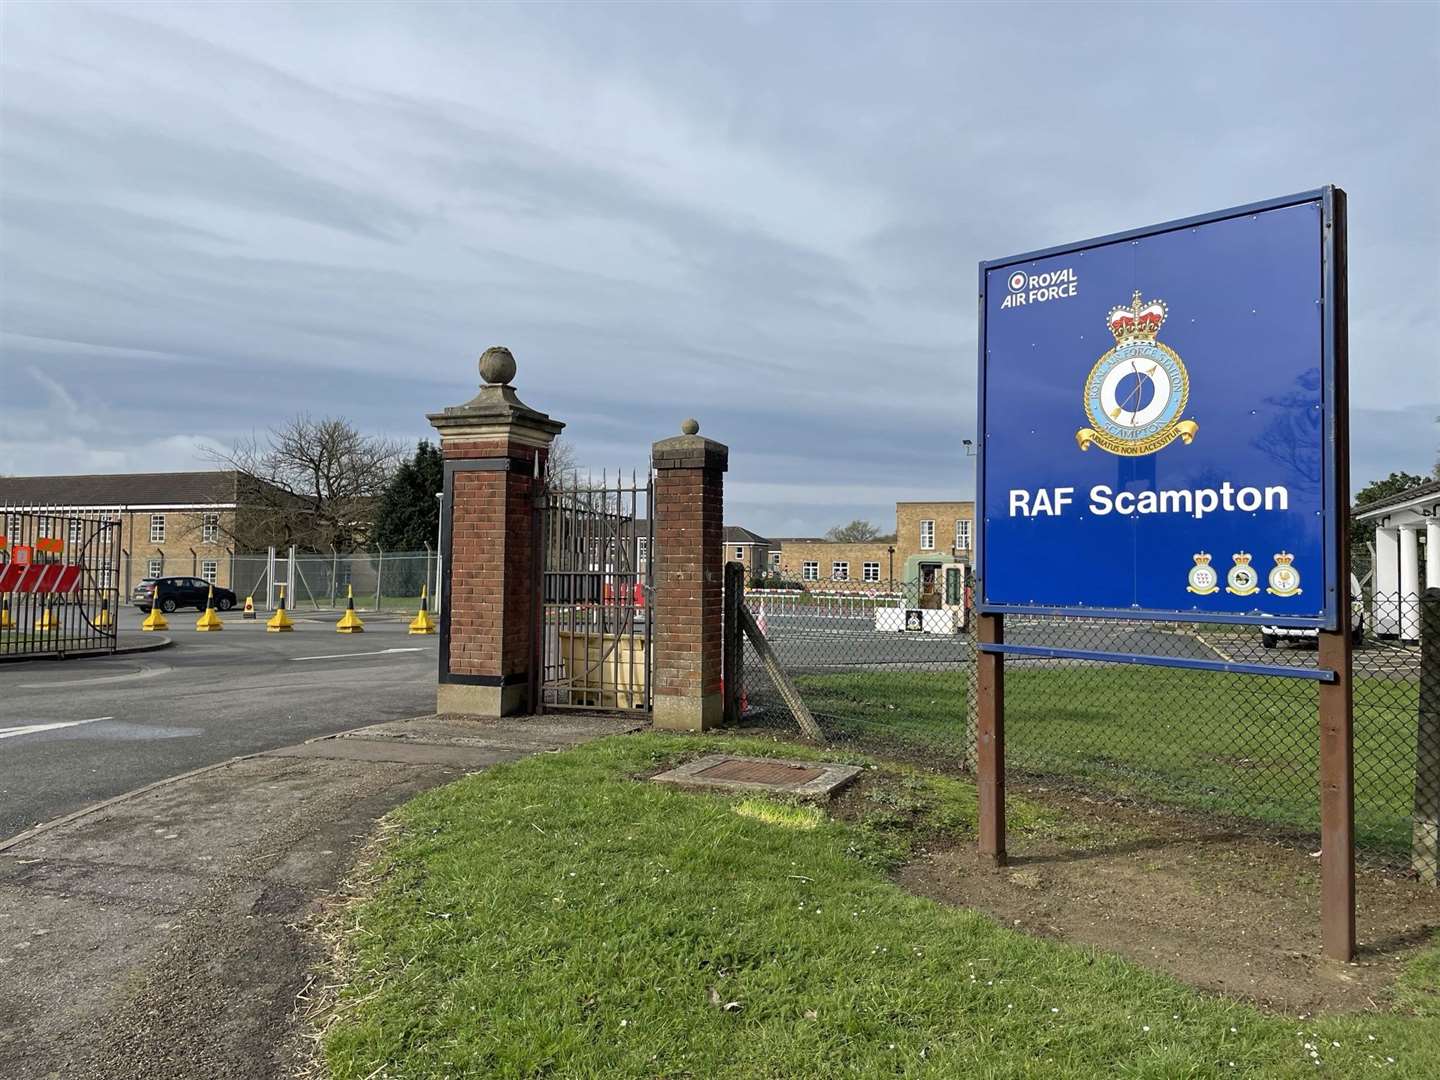 RAF Scampton in Lincolnshire (Callum Parke/PA)